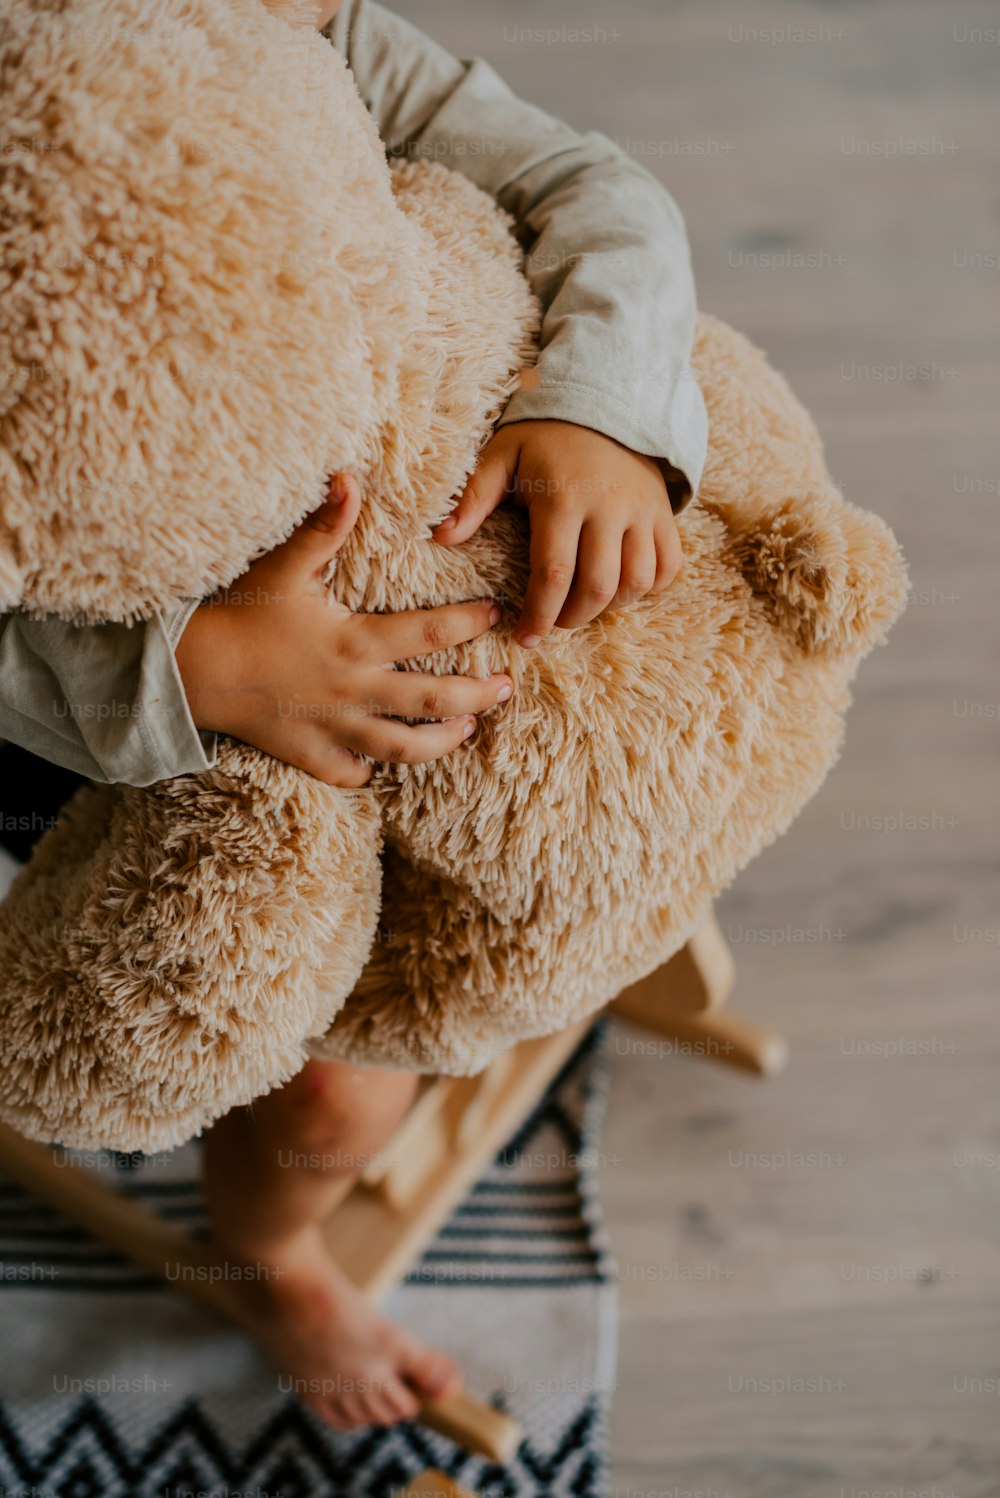 Un bambino che tiene un orsacchiotto sopra un tappeto